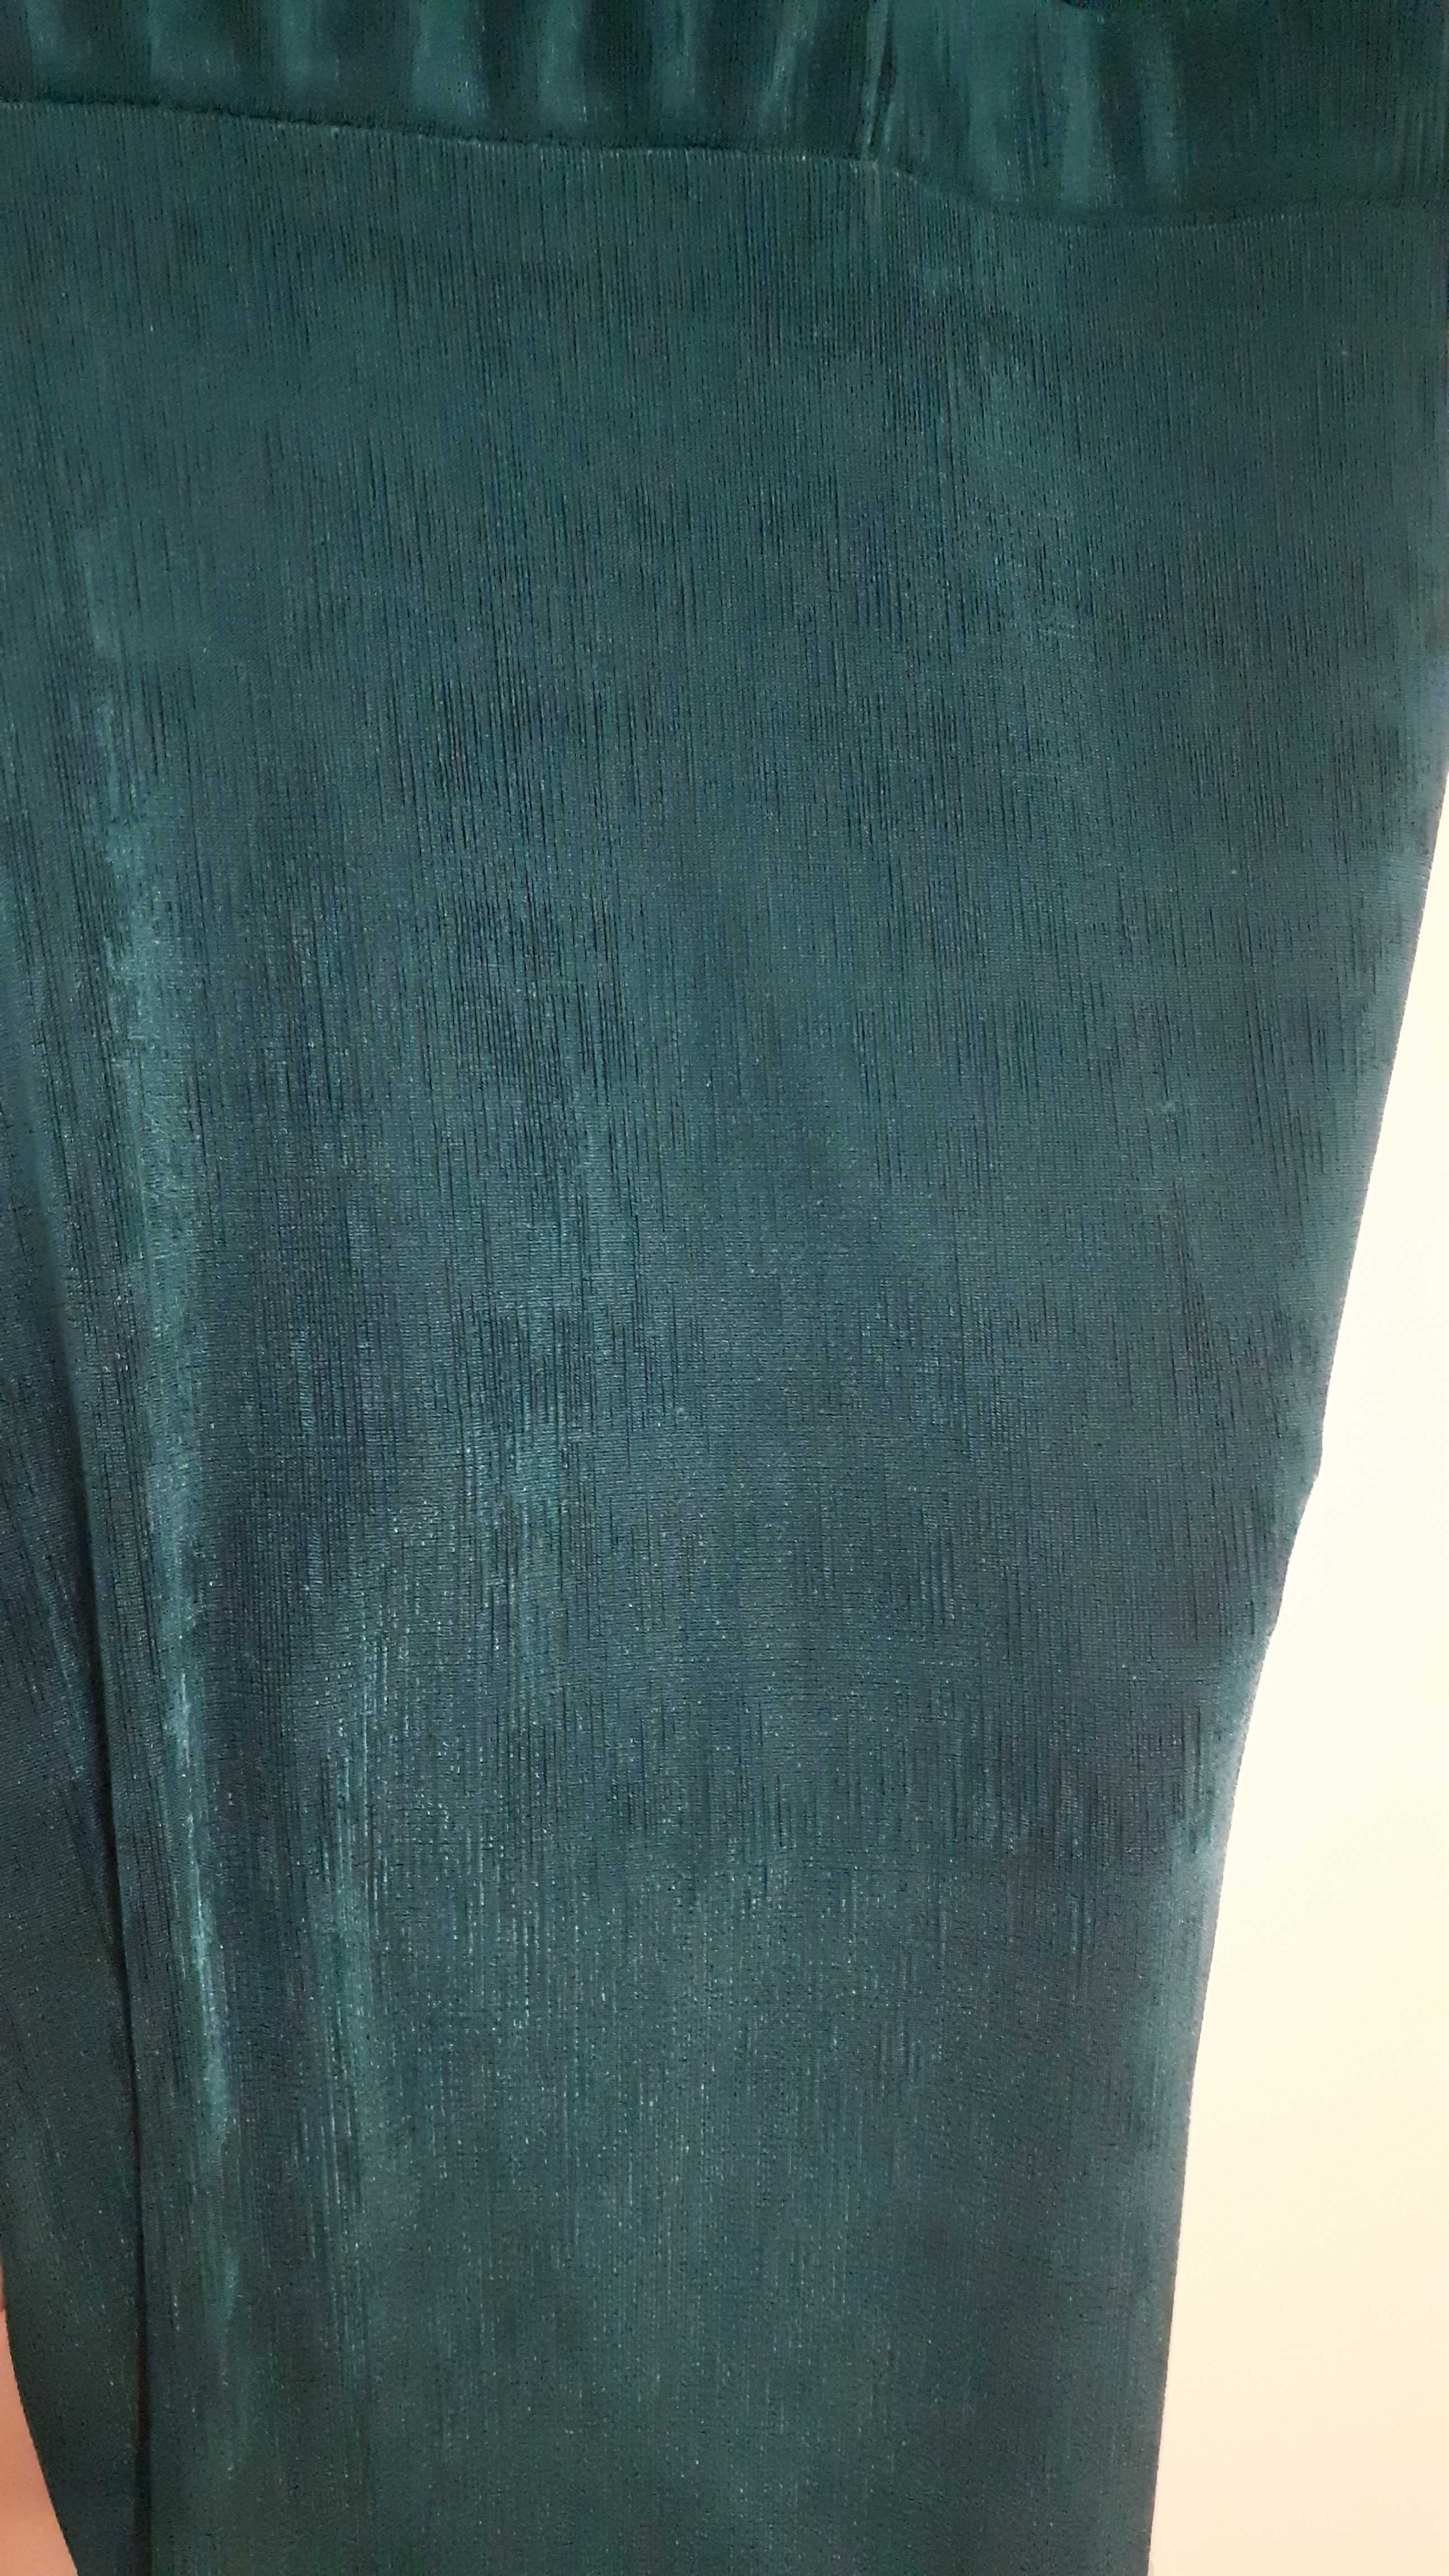 Piękna sukienka koktajlowa, turkusowa, wycięte boki, plecy łezka